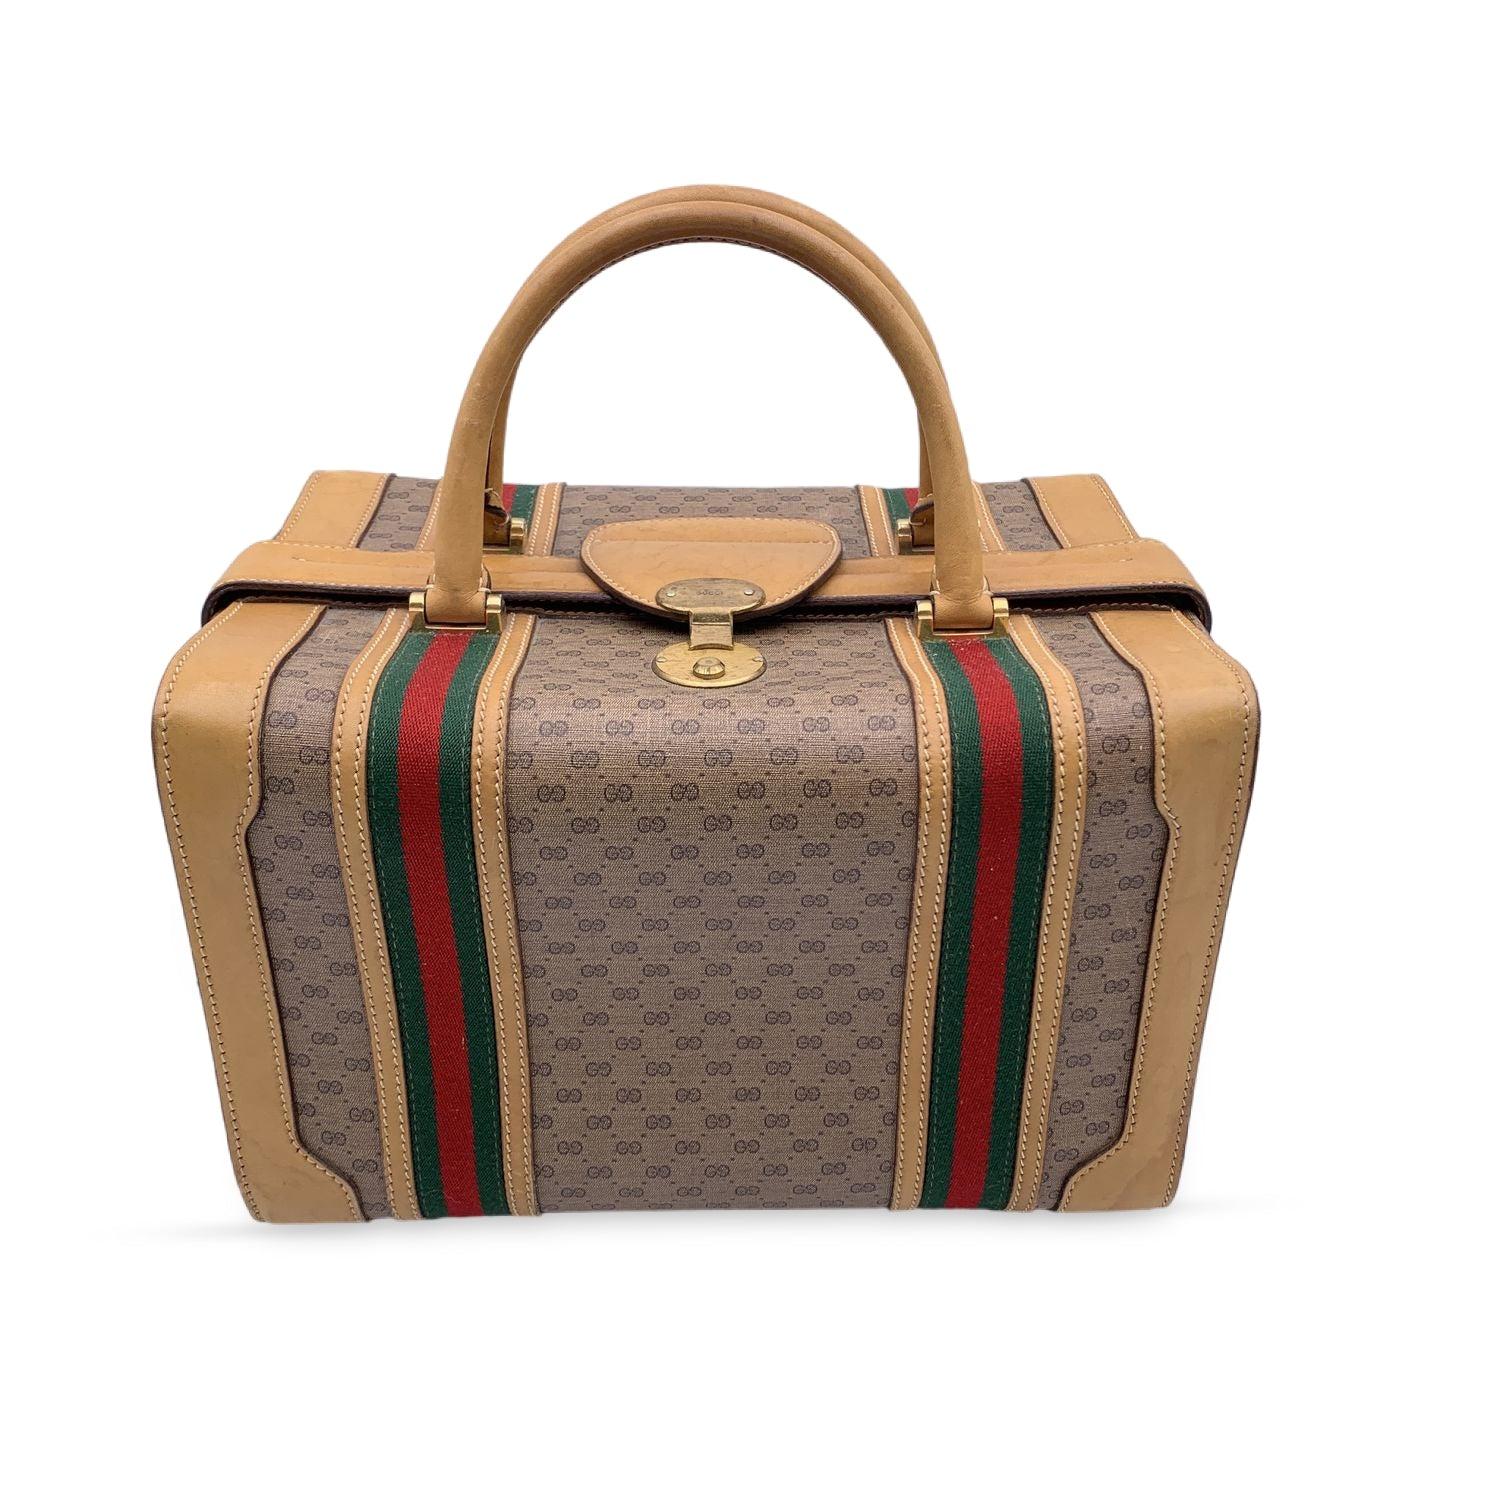 Gucci Vintage Beige Monogram Canvas Train Case Bag with Stripes